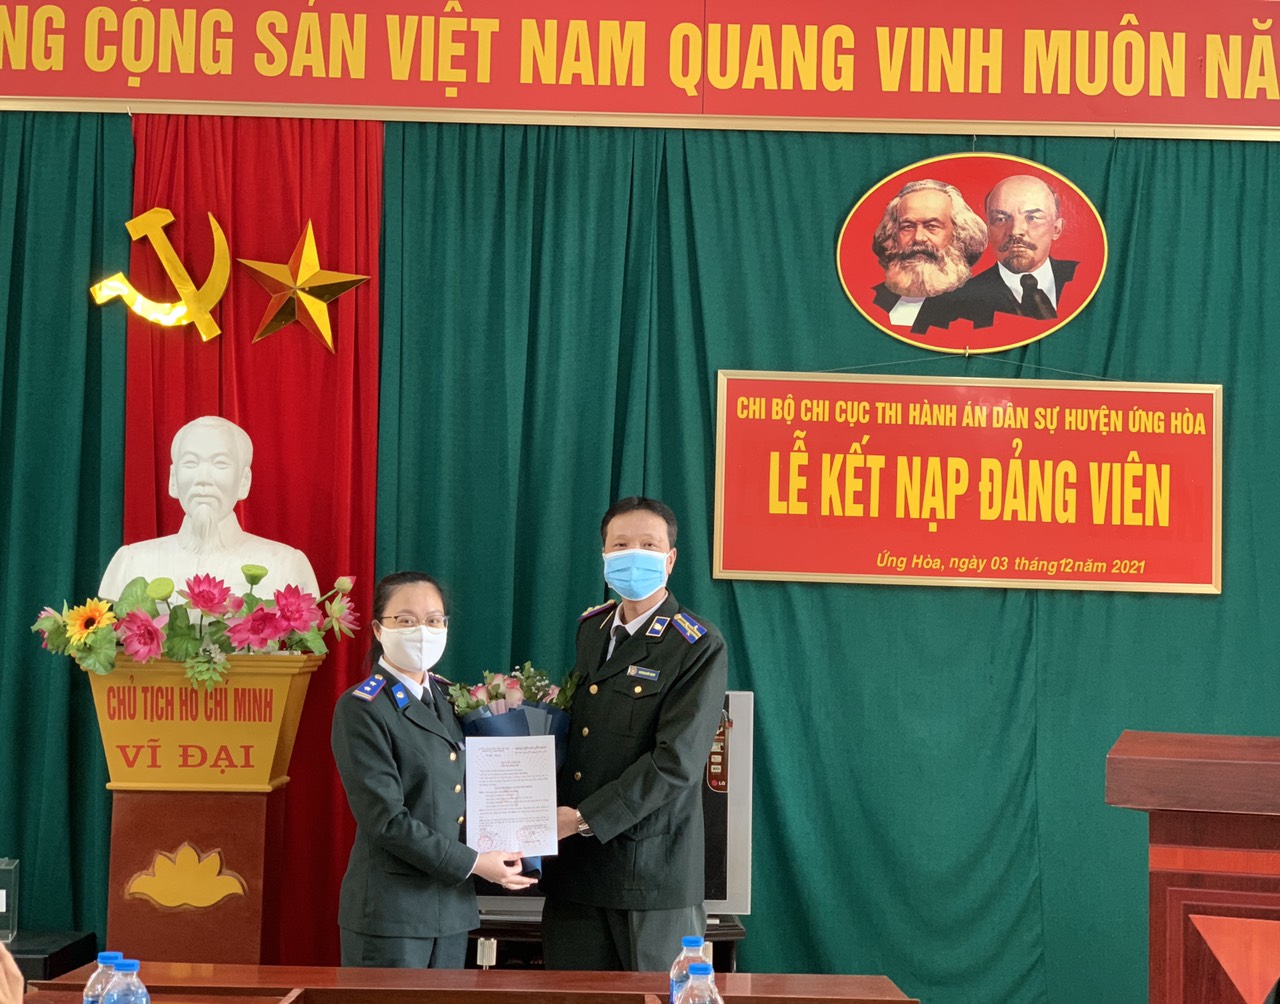 Lễ kết nạp đảng viên mới của Chi bộ Chi cục Thi hành án dân sự huyện Ứng Hòa, thành phố Hà Nội